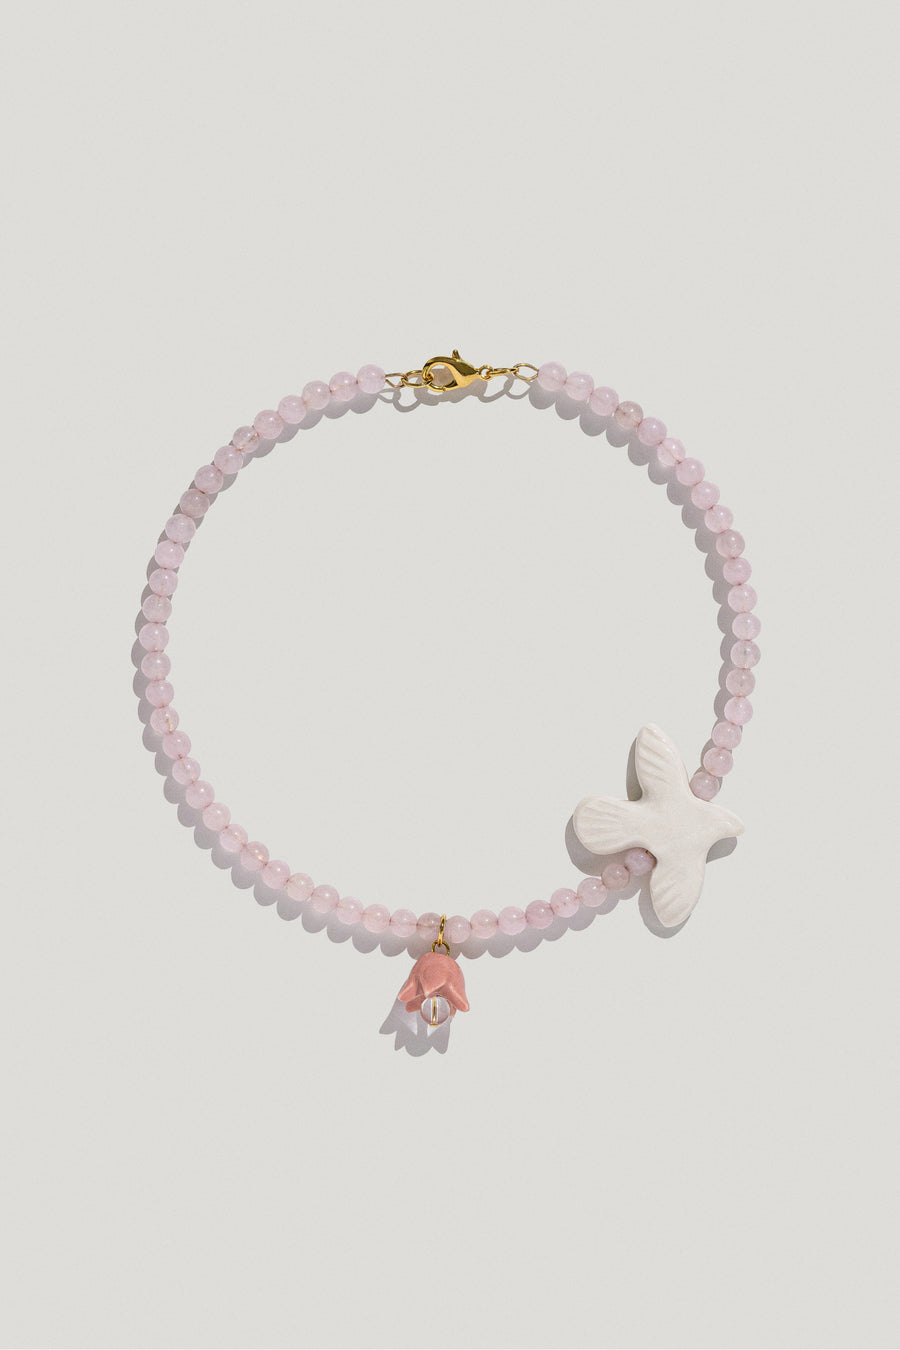 Polysk necklace with bubble-gum quartz, porcelain bird and flower